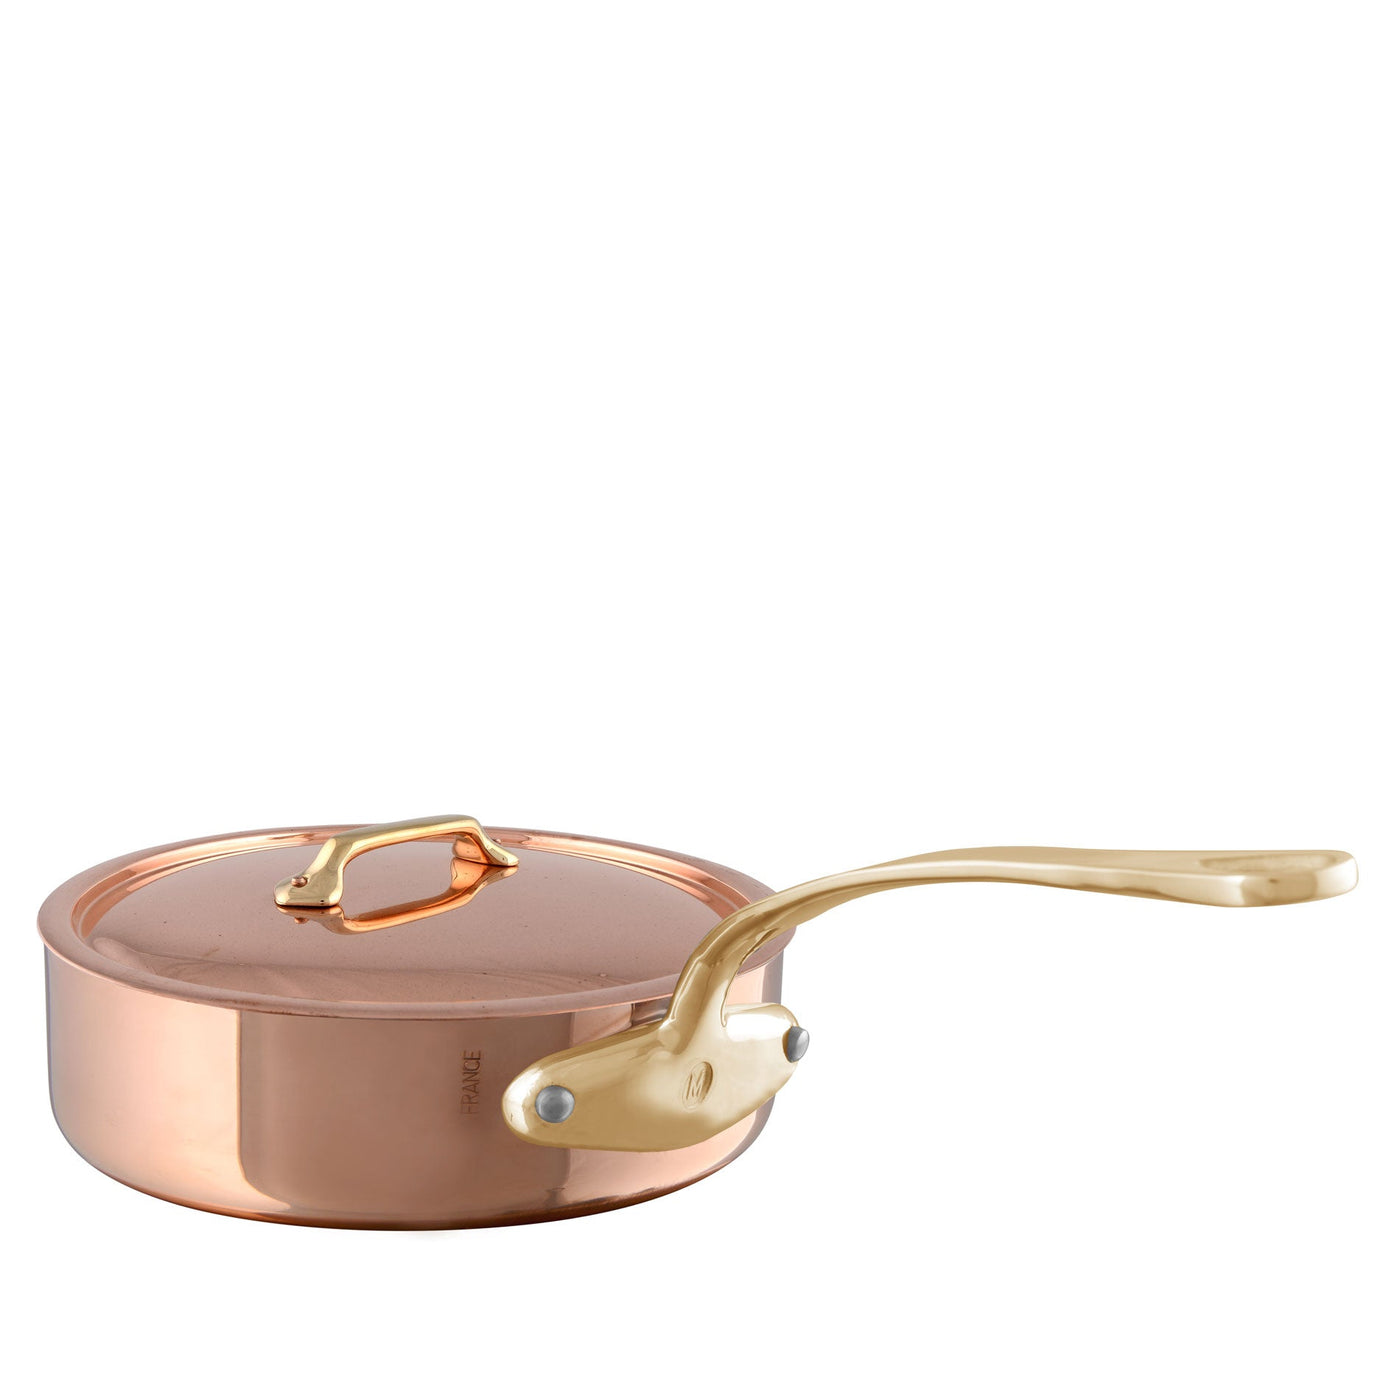 Mauviel M'heritage M200B Copper Sauté Pan w/Lid, Bronze Handles 3.1 qt - Kitchen Universe